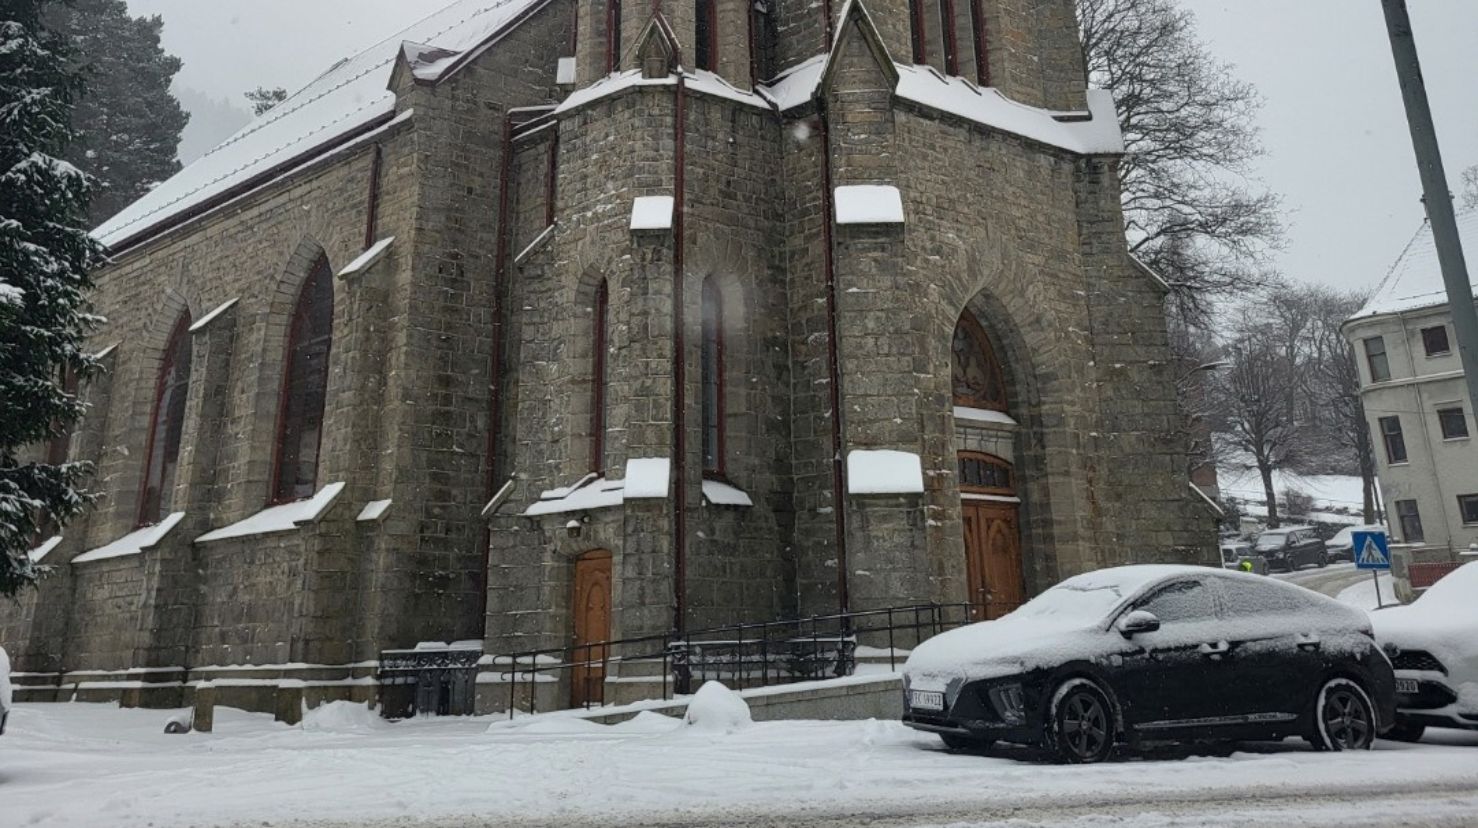 Akasia er i full gang med snørydding, men det store snøfallet i Bergen byr på ekstra utfordringer. Illustrasjonsbilde av Sandvikskirken i dag. Foto: Andreas Pettersen.